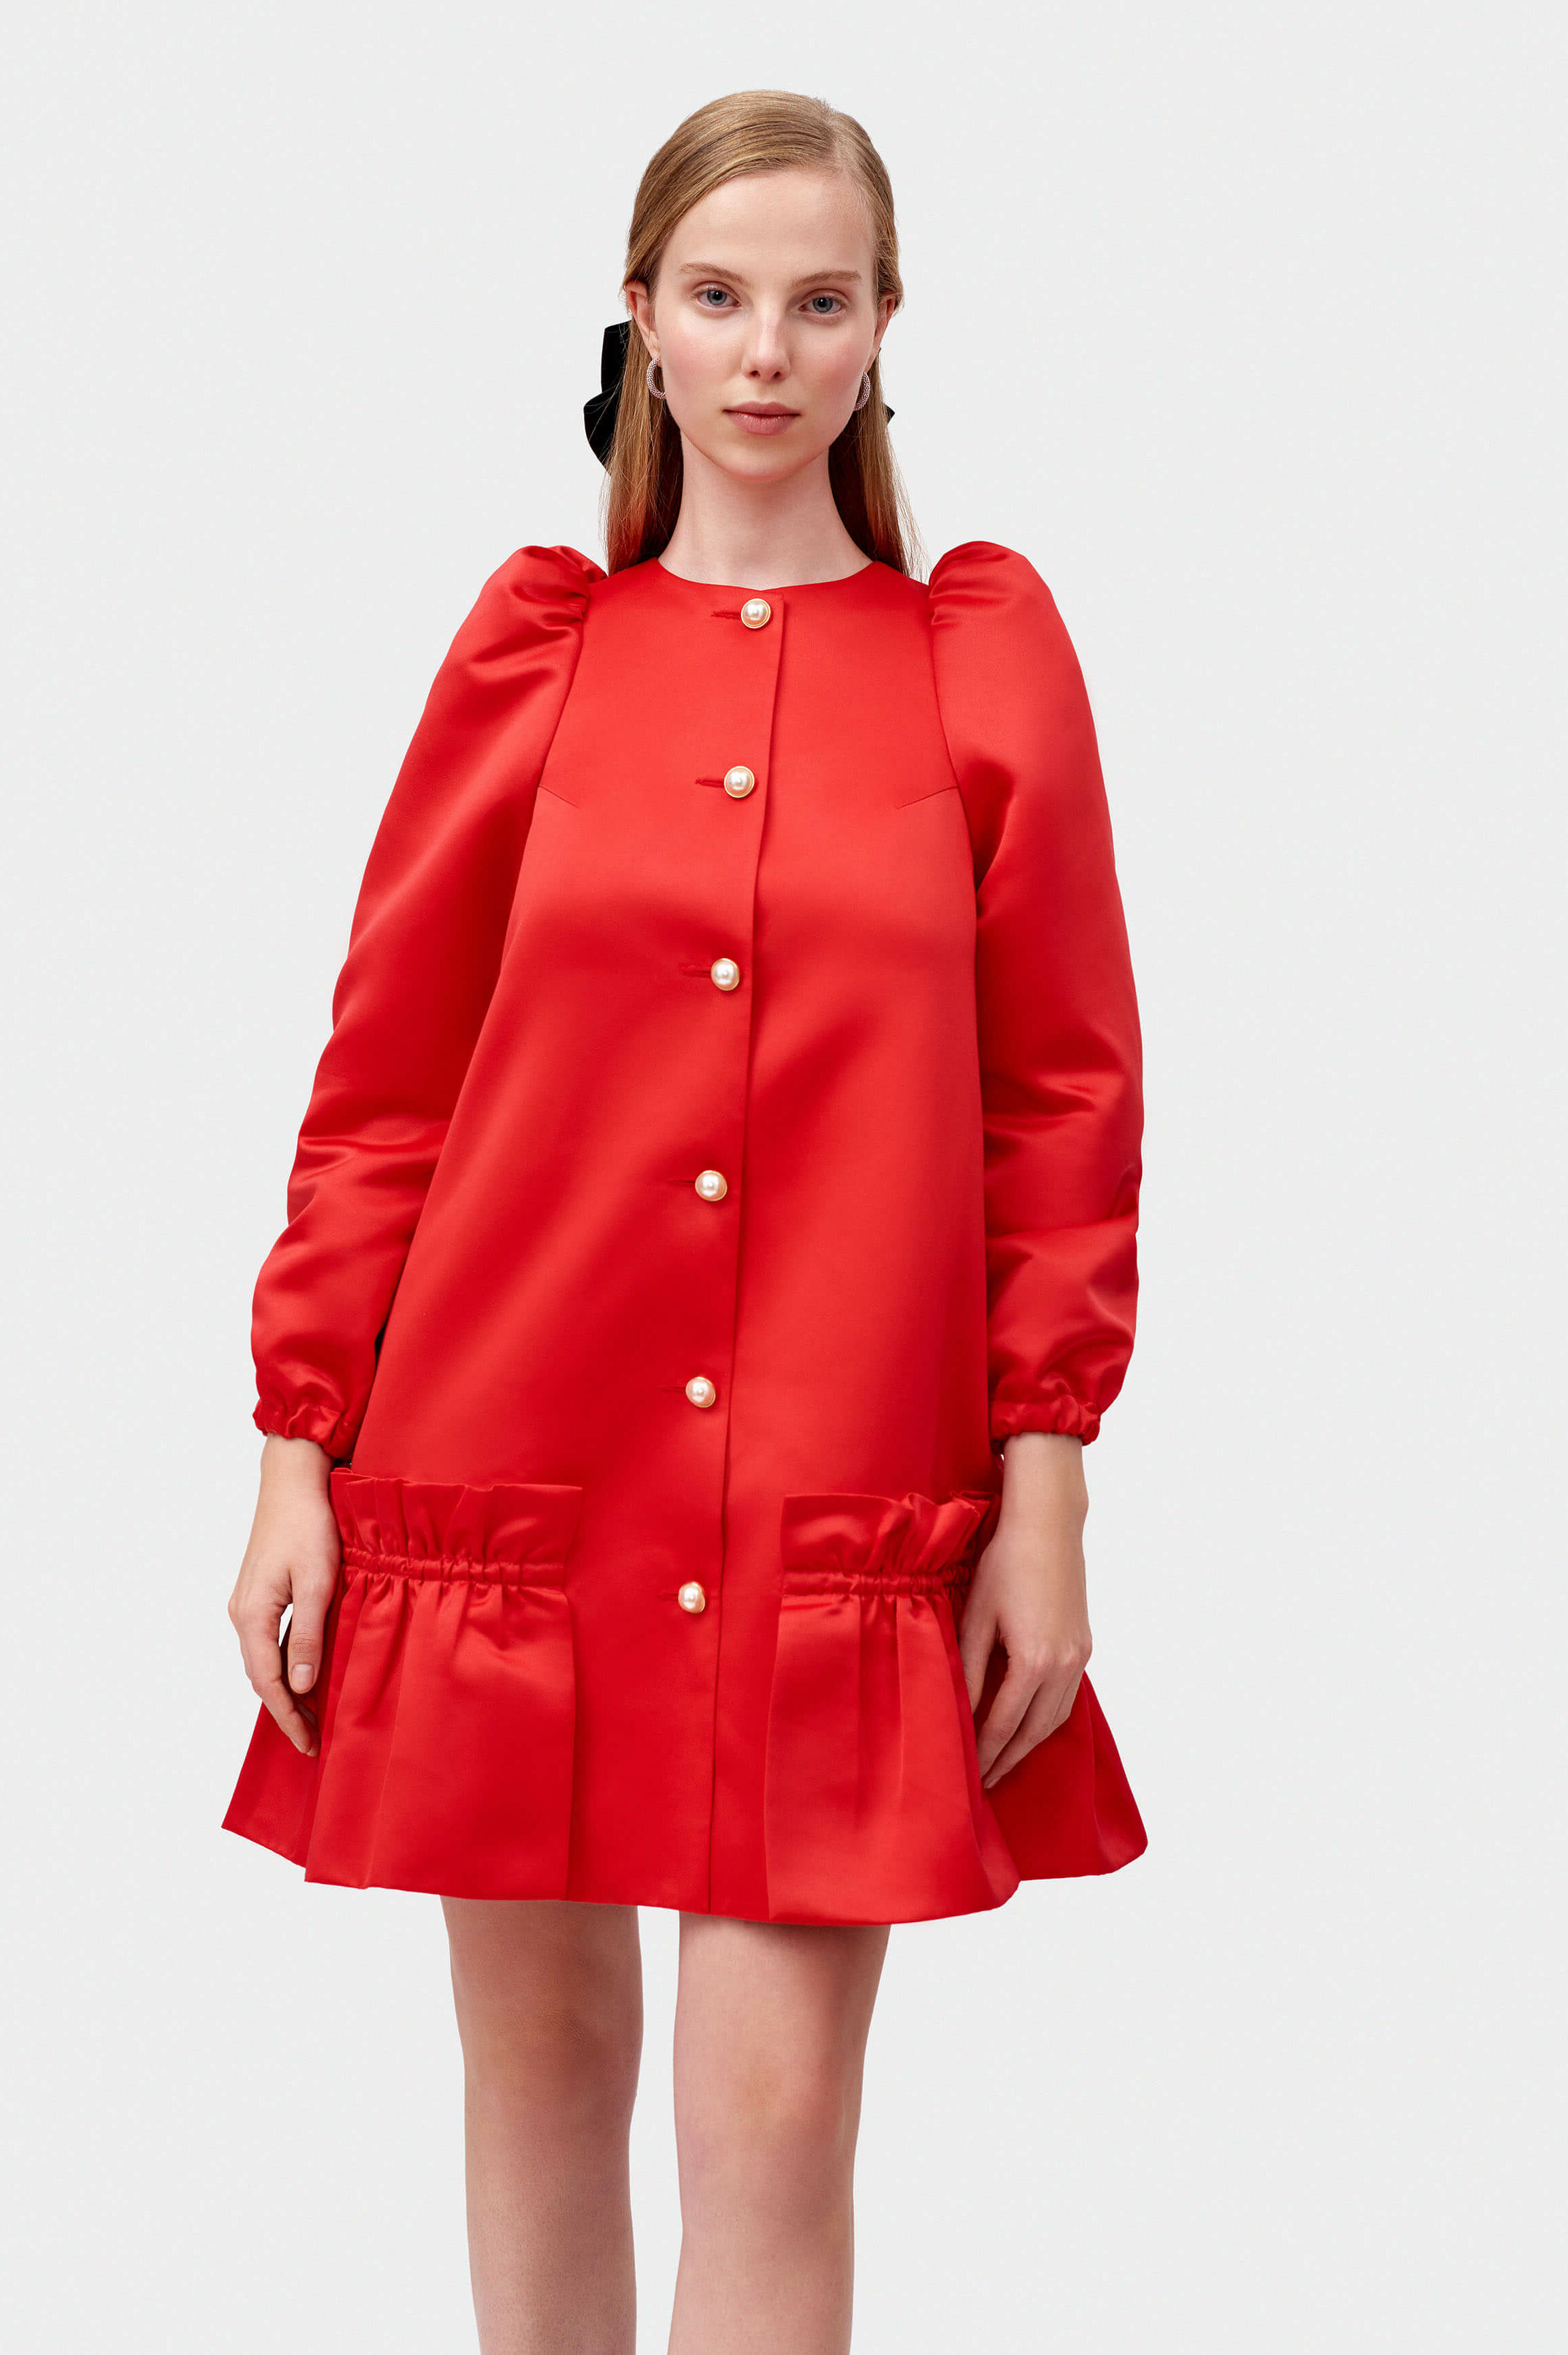 Red puff sleeve dress | Short women's dress by Sleeper